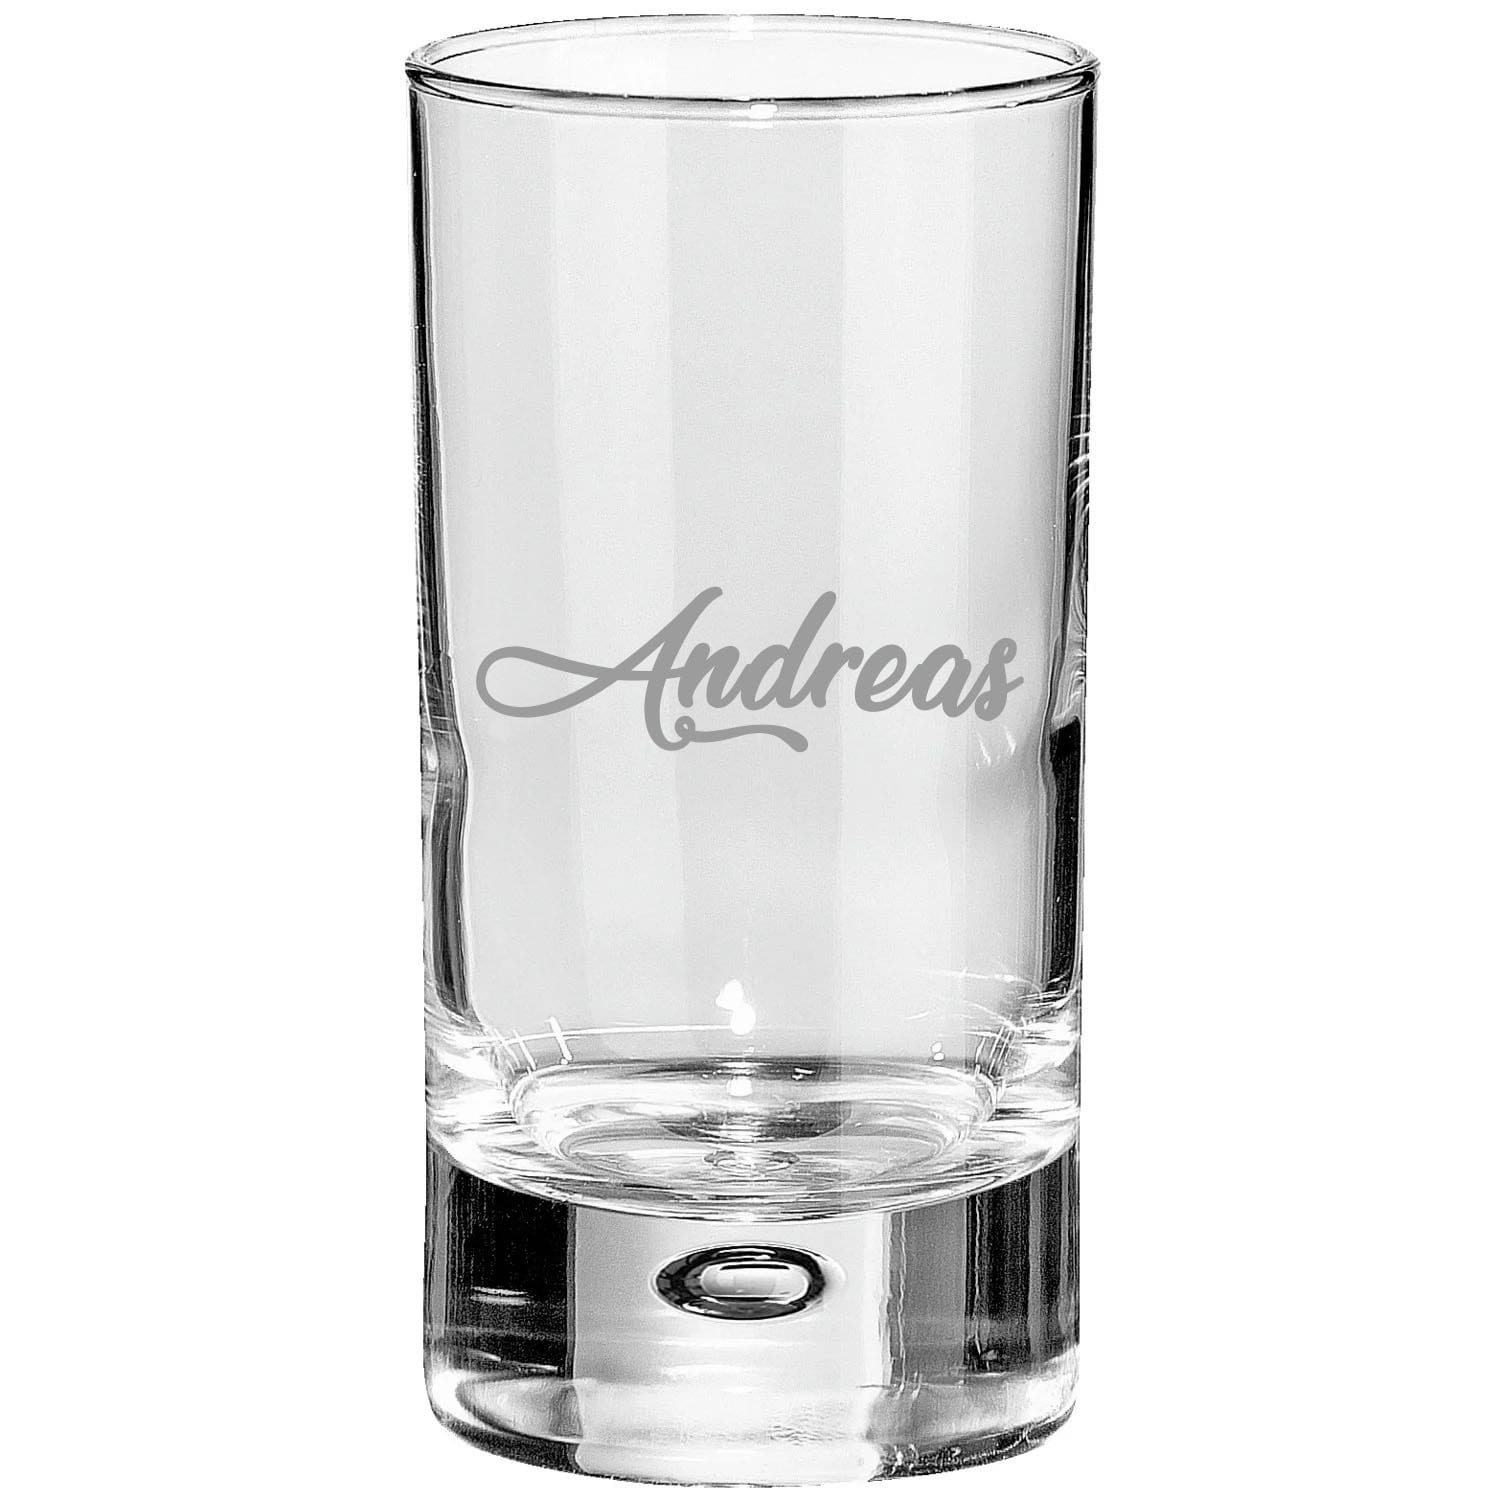 Shotglas, Schnapsglas, personalisiert, mit Wunschnamen, Geschenk, schwere Qualität, massiv, mit